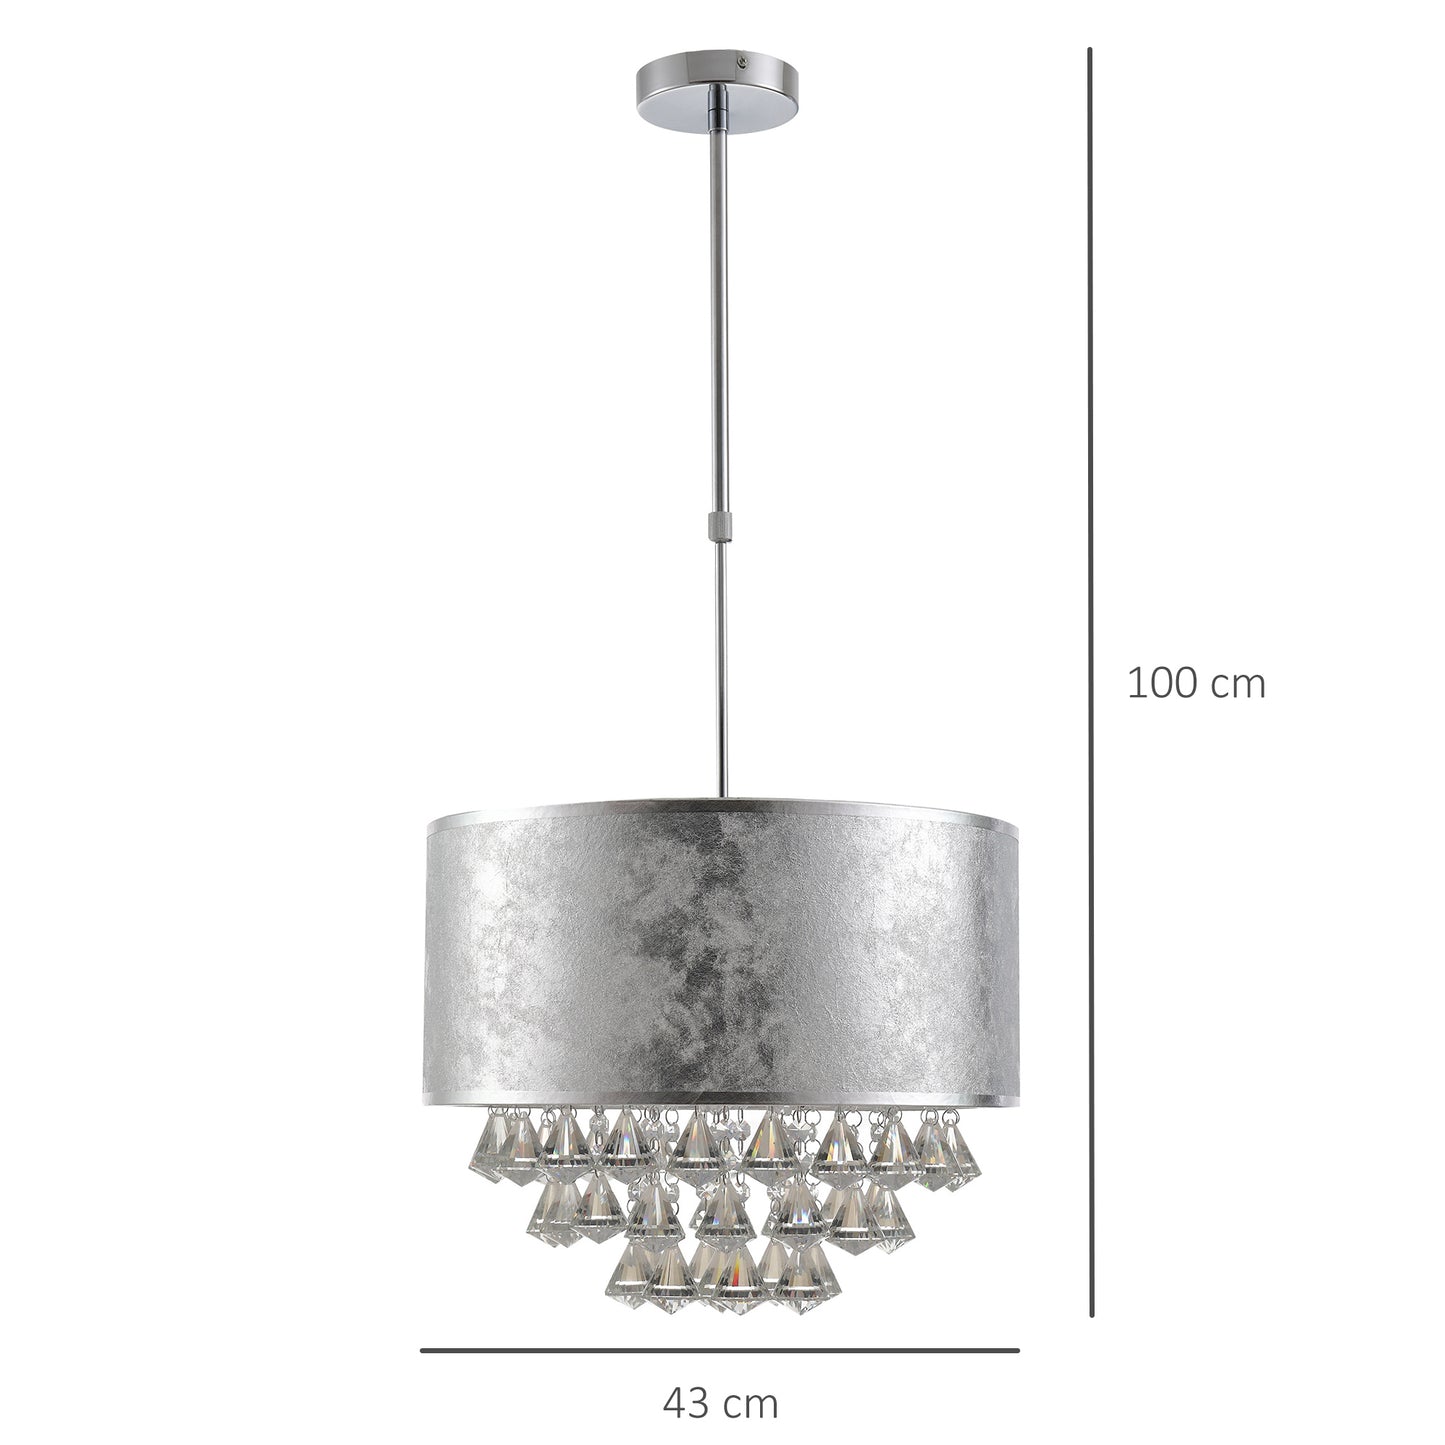 HOMCOM Elegance Look Pendant Light with Adjustable Pole Metal Base and Crystal Pendant